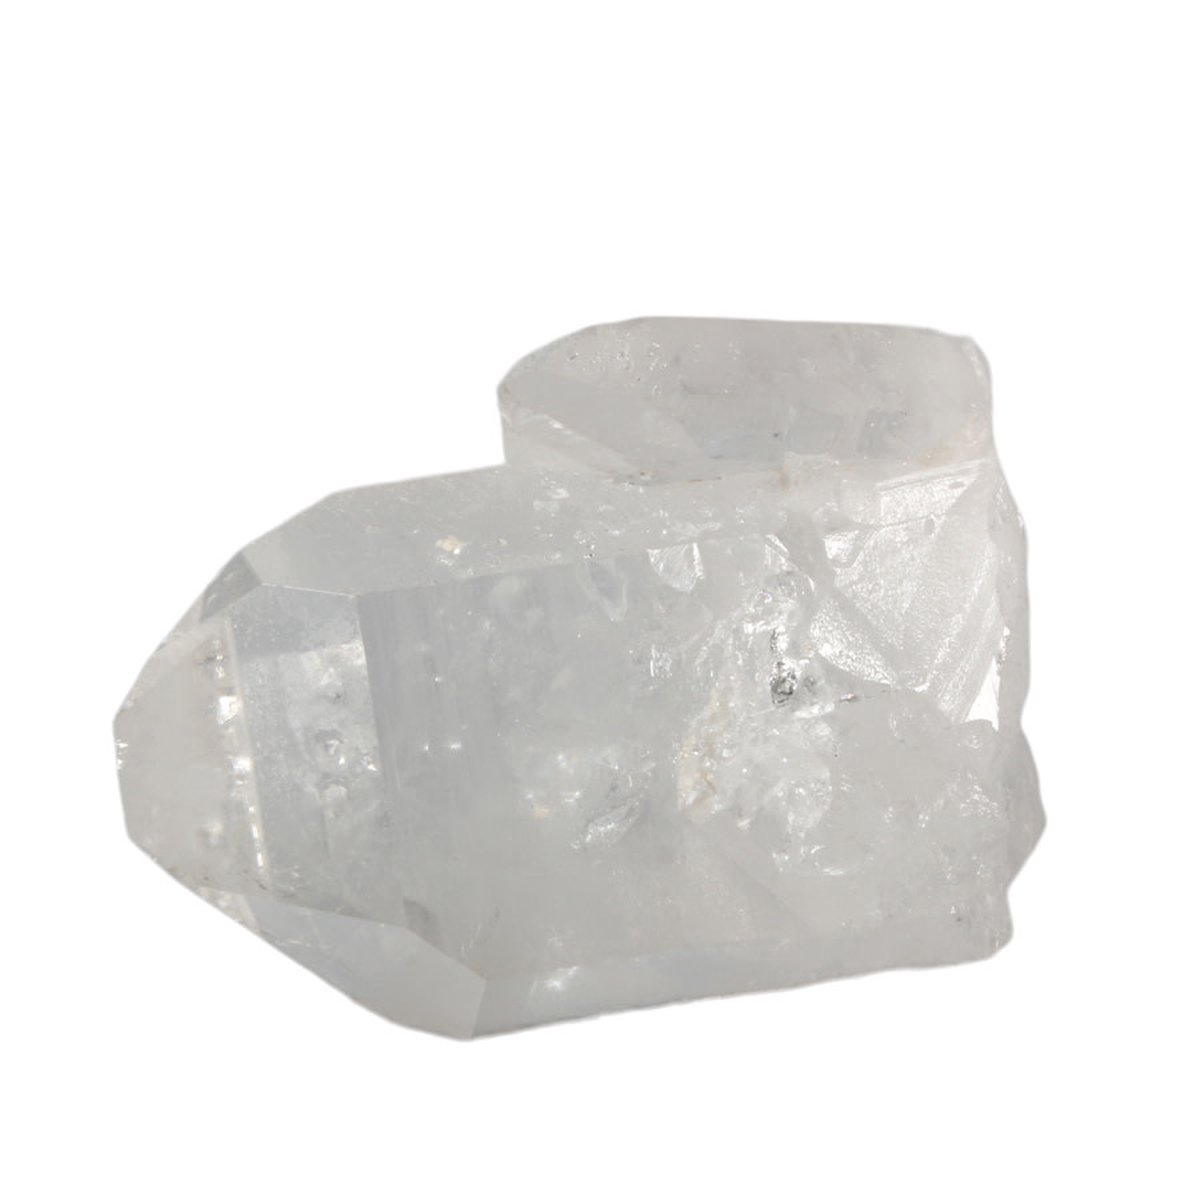 Isis kristal (bergkristal) cluster 11,3 x 7,3 x 5 cm | 487 gram